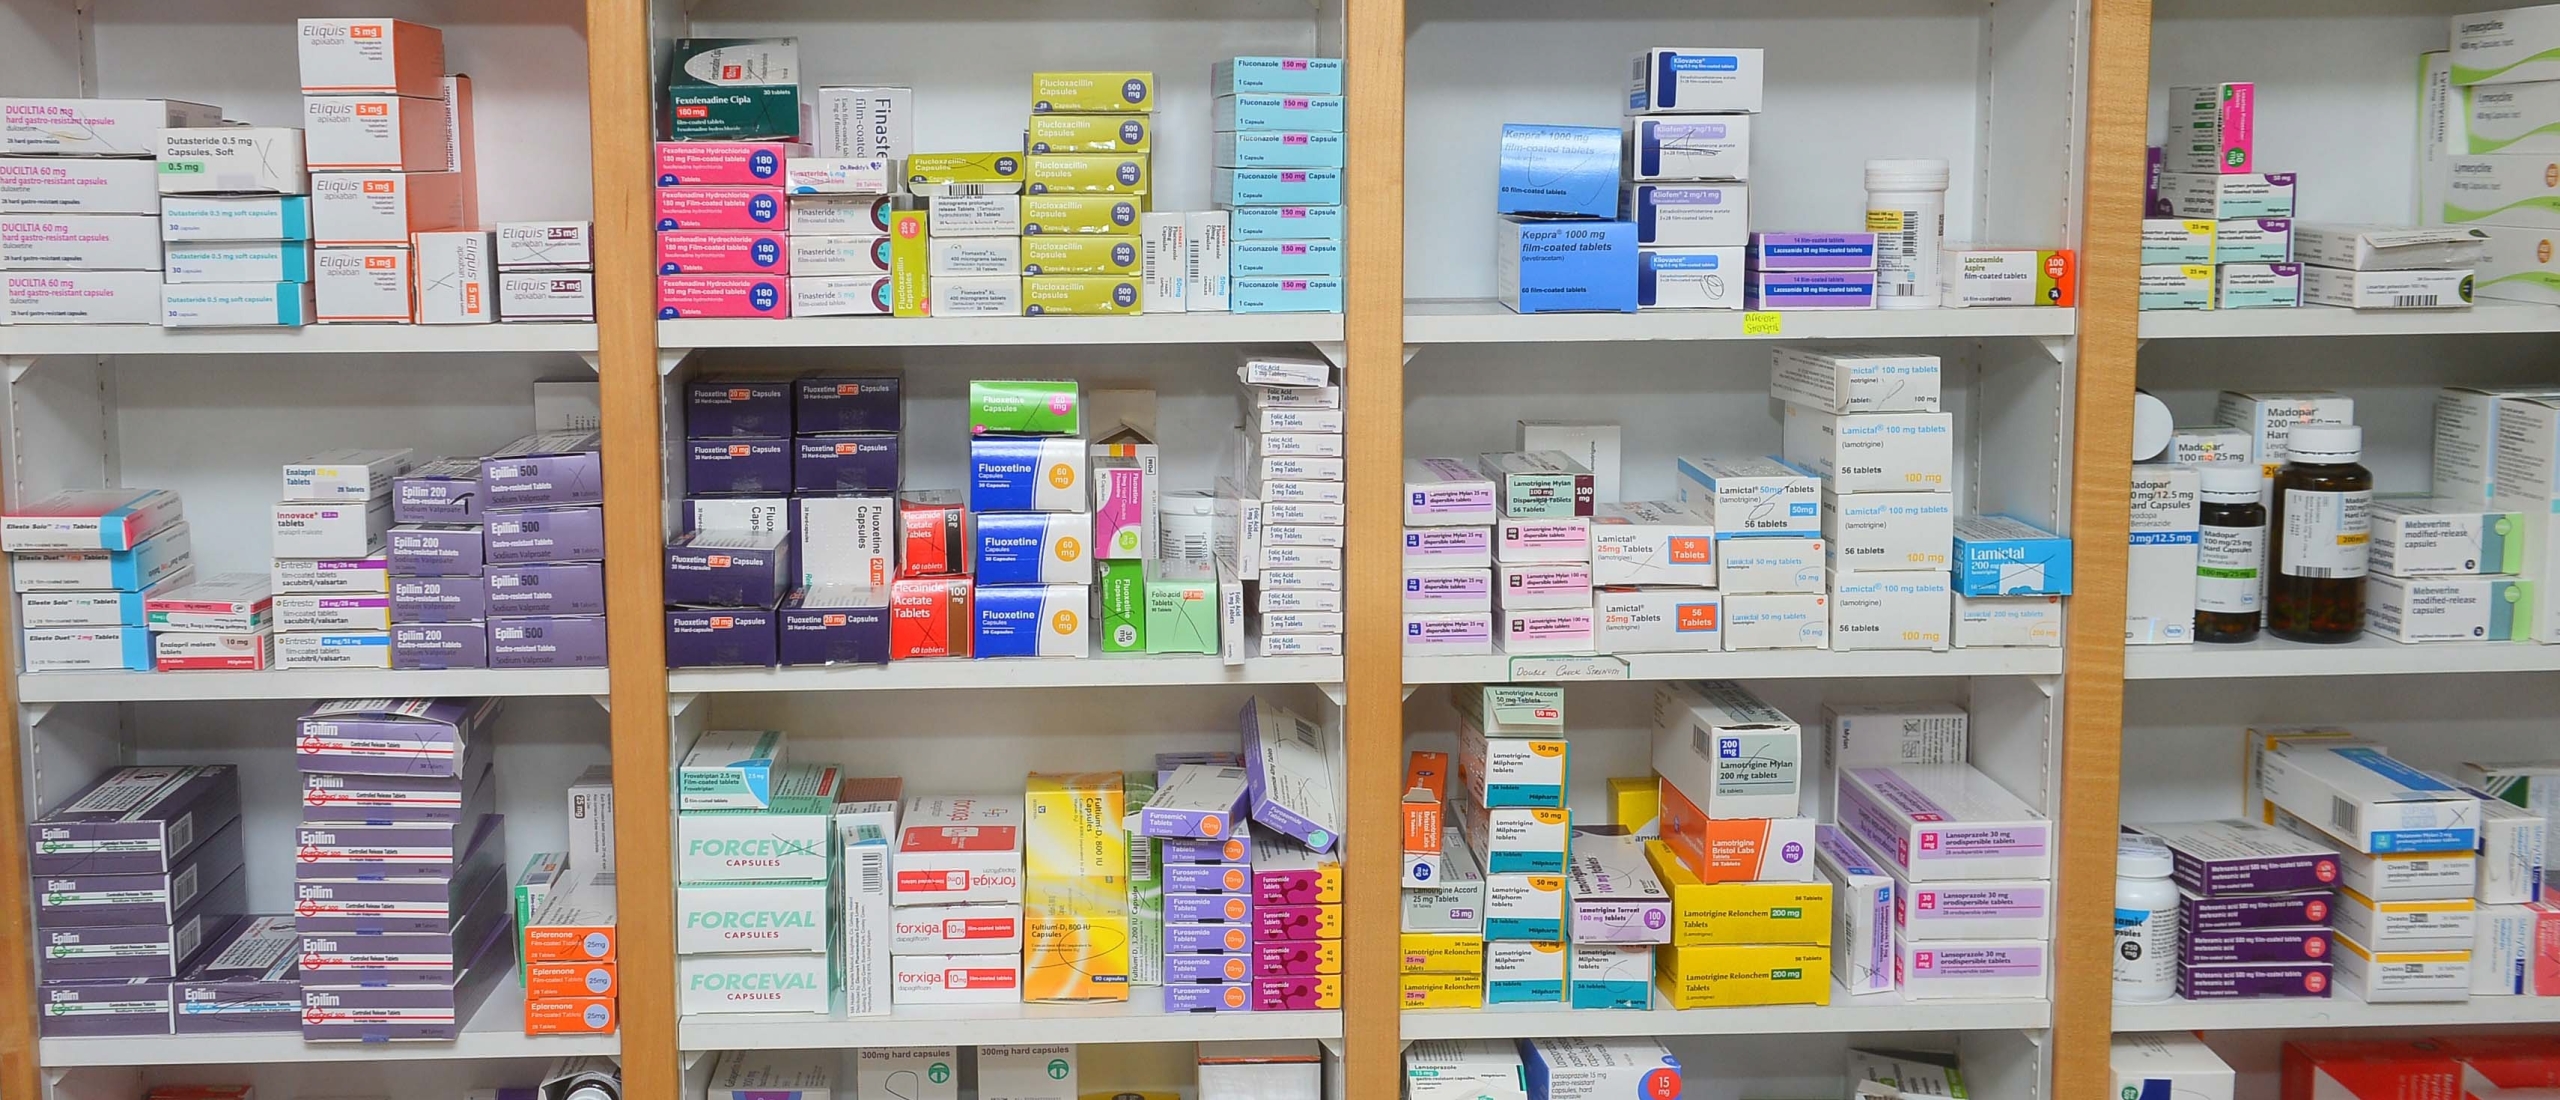 Tekort aan geneesmiddelen nog nooit zo groot volgens apothekers